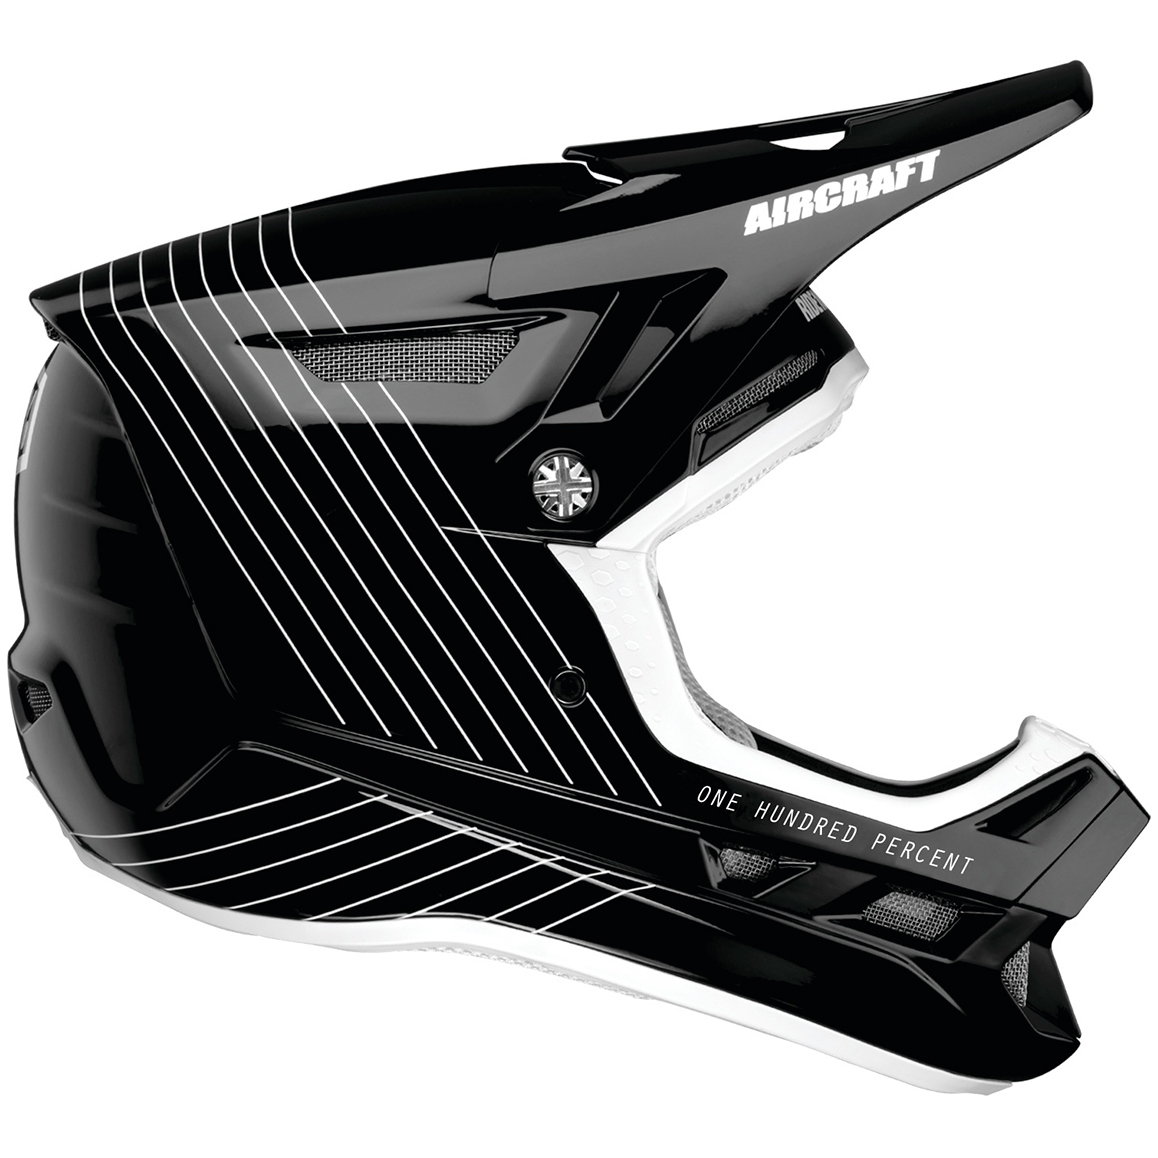 Produktbild von 100% Aircraft Composite Helm - Silo